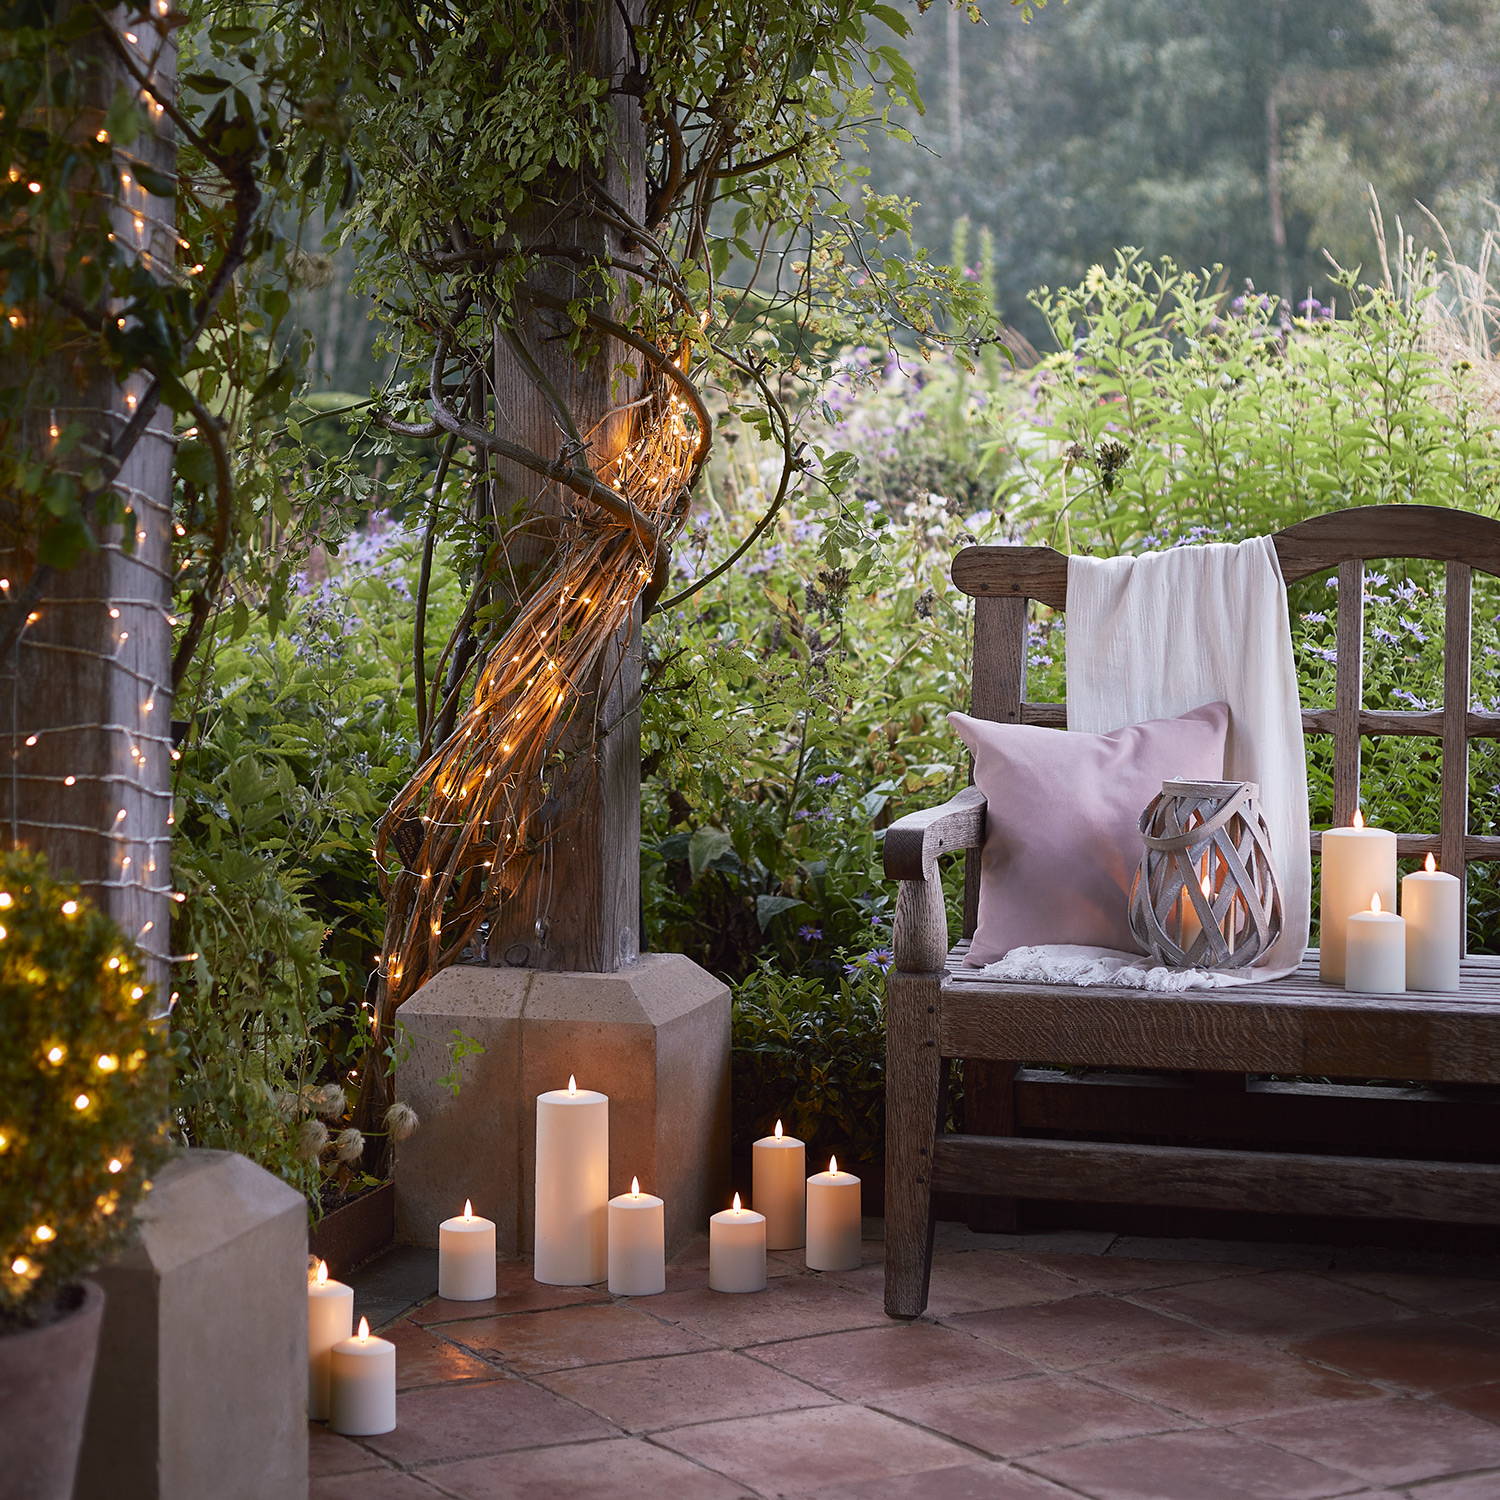 Jardin avec banc sur lequel se trouve une lanterne et des bougies avec des bougies sur le sol et des guirlandes lumineuses.